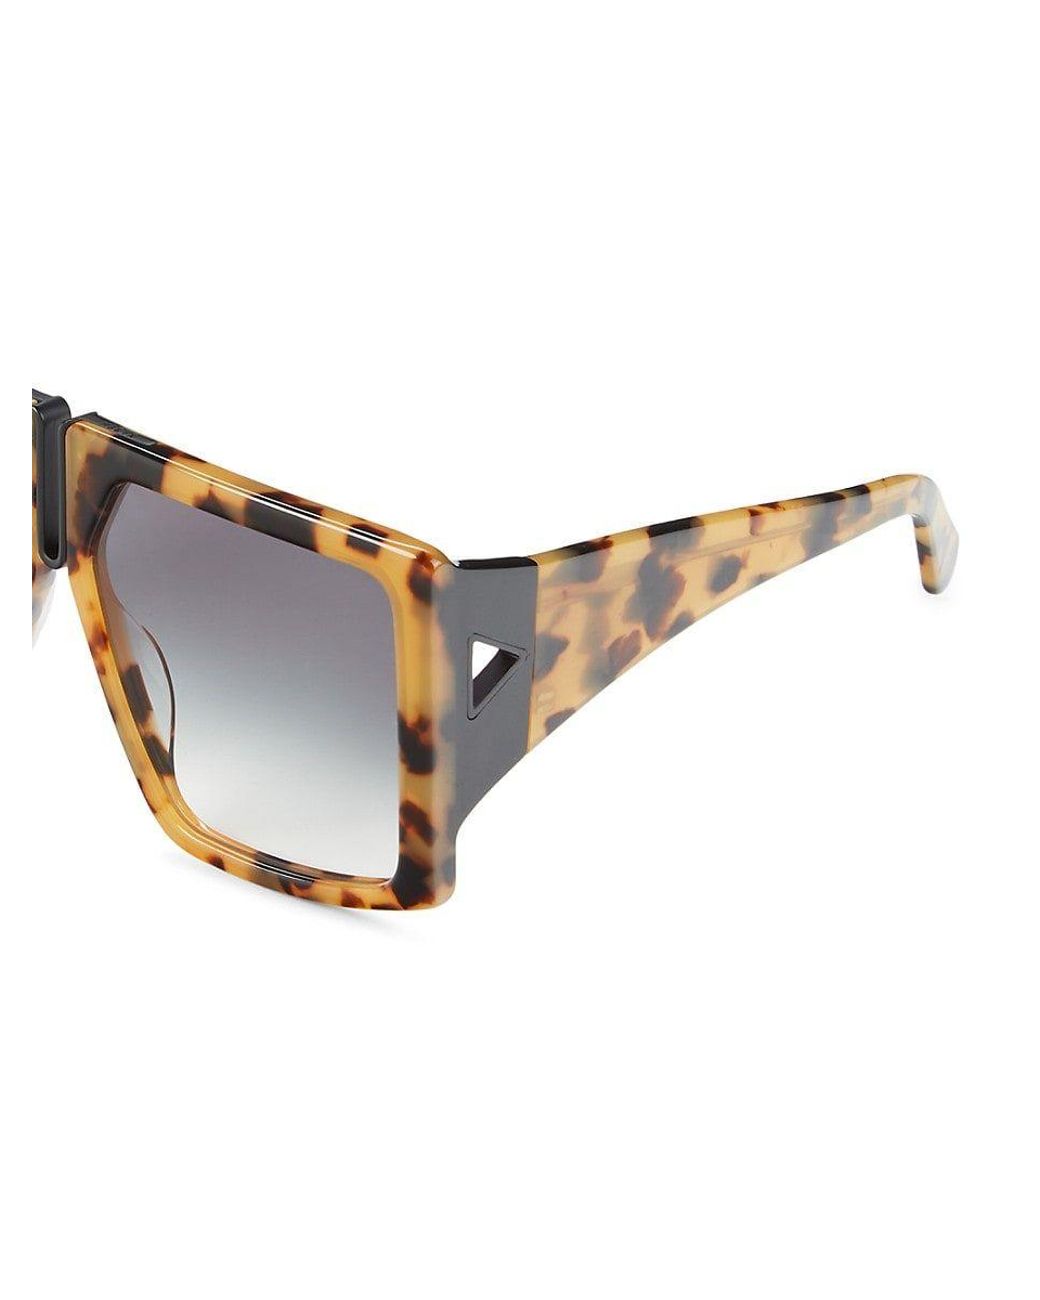 Best Karen Walker Sunglasses, Accessories Shopping Guide | Karen walker, Karen  walker sunglasses, Sunglasses